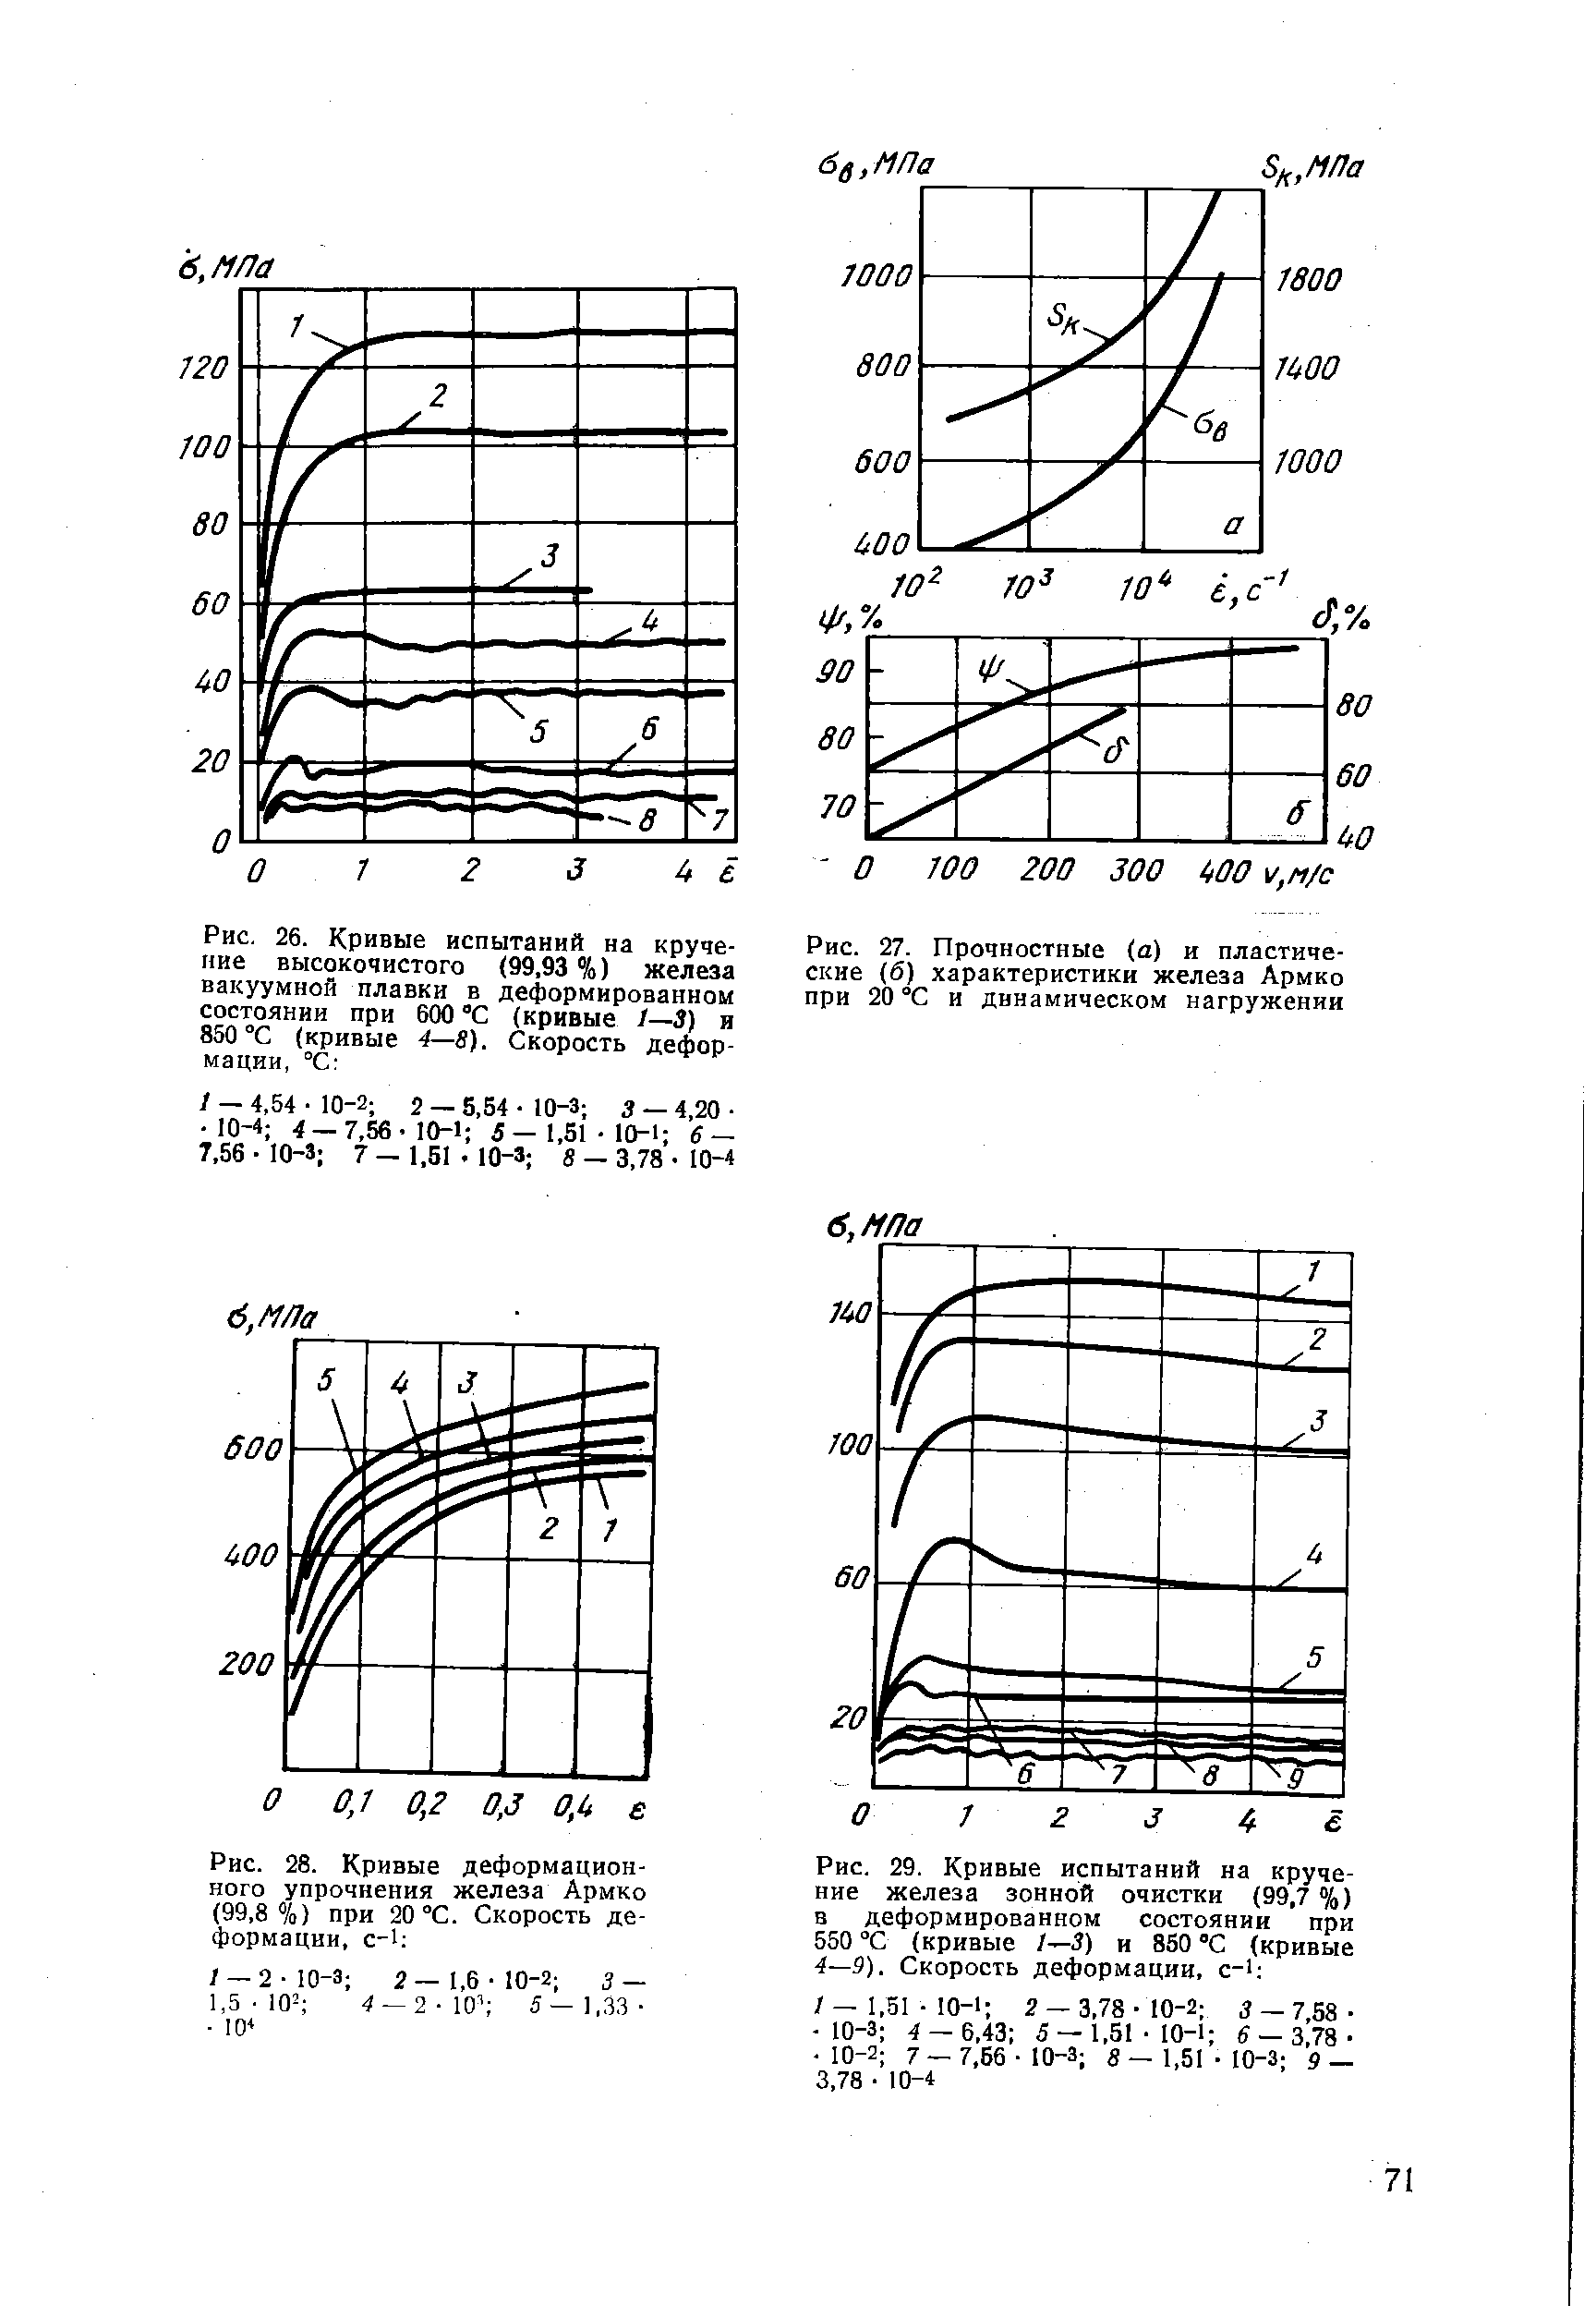 Рис. 27. Прочностные (а) и пластические (б) характеристики железа Армко при 20 °С и динамическом нагружении
